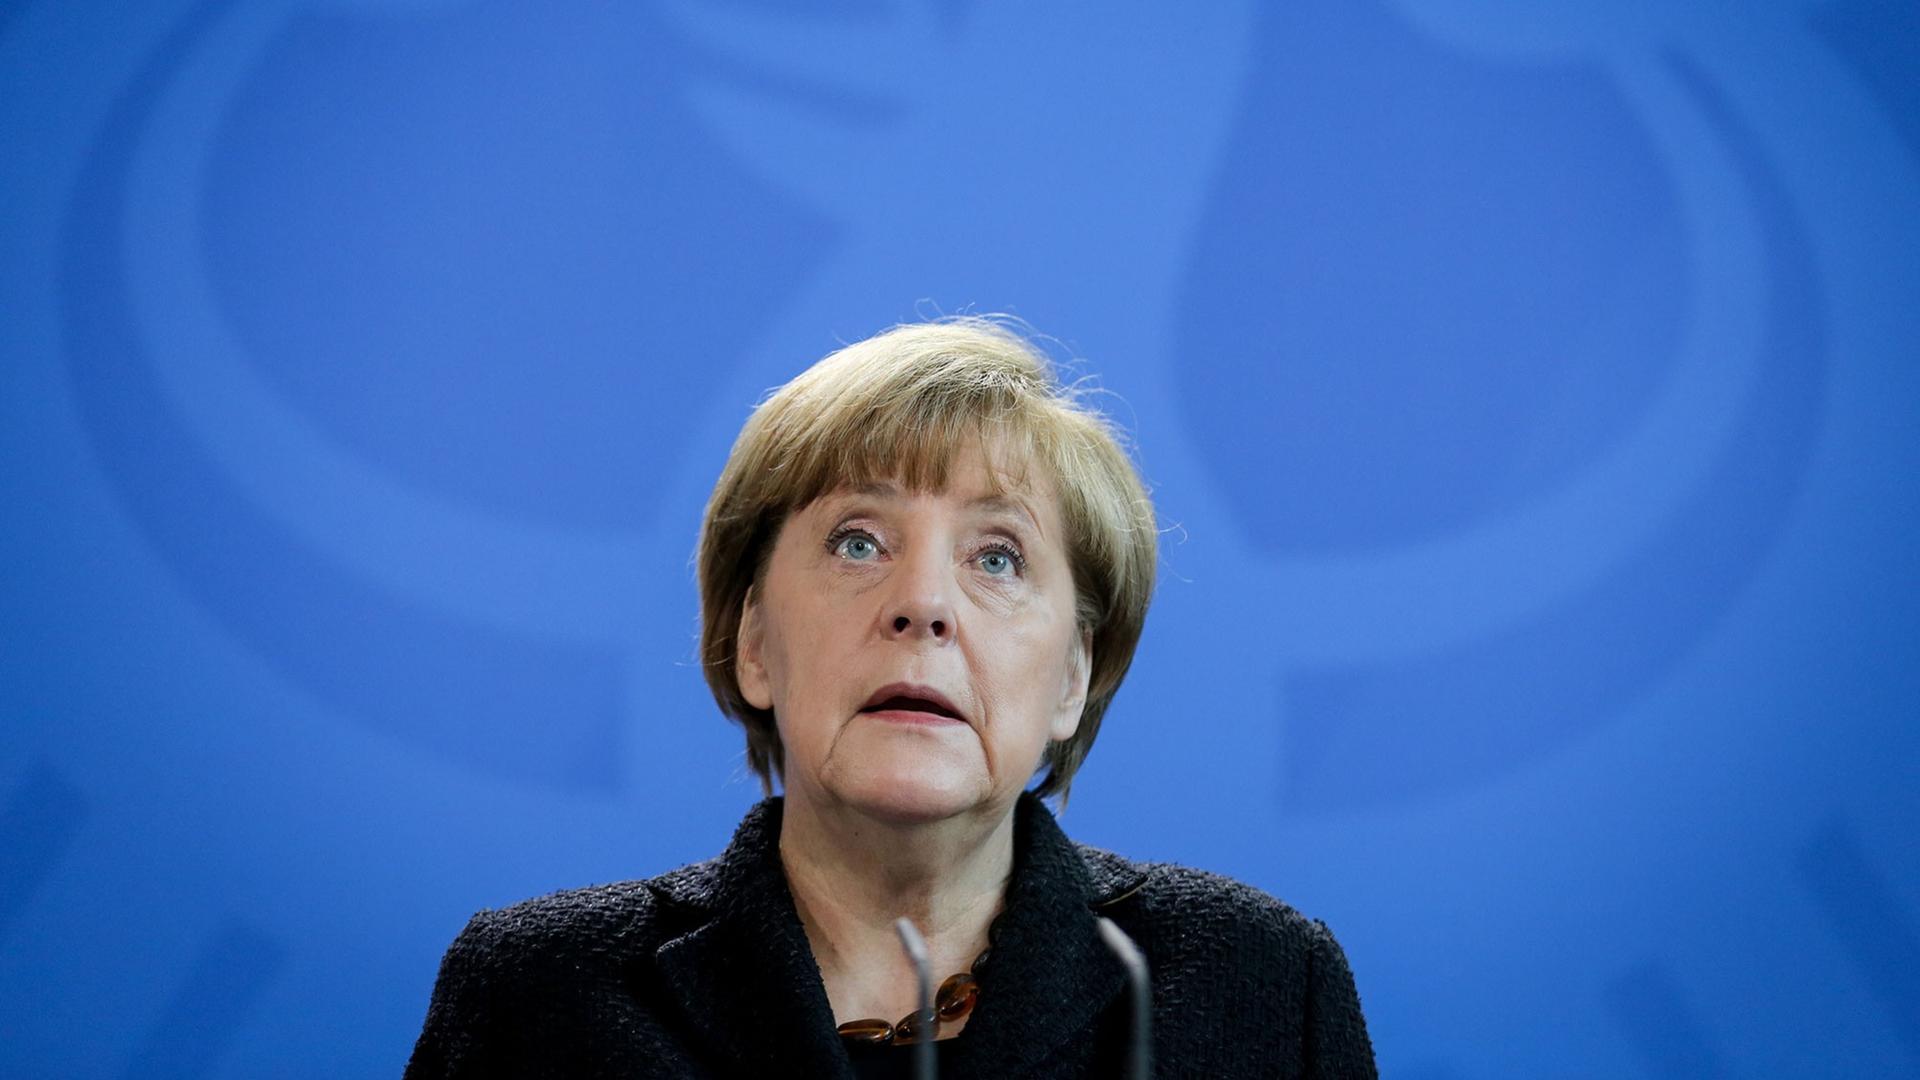 Bundeskanzlerin Angela Merkel (CDU) gibt im Bundeskanzleramt eine Erklärung zu den Anschlägen in Paris ab